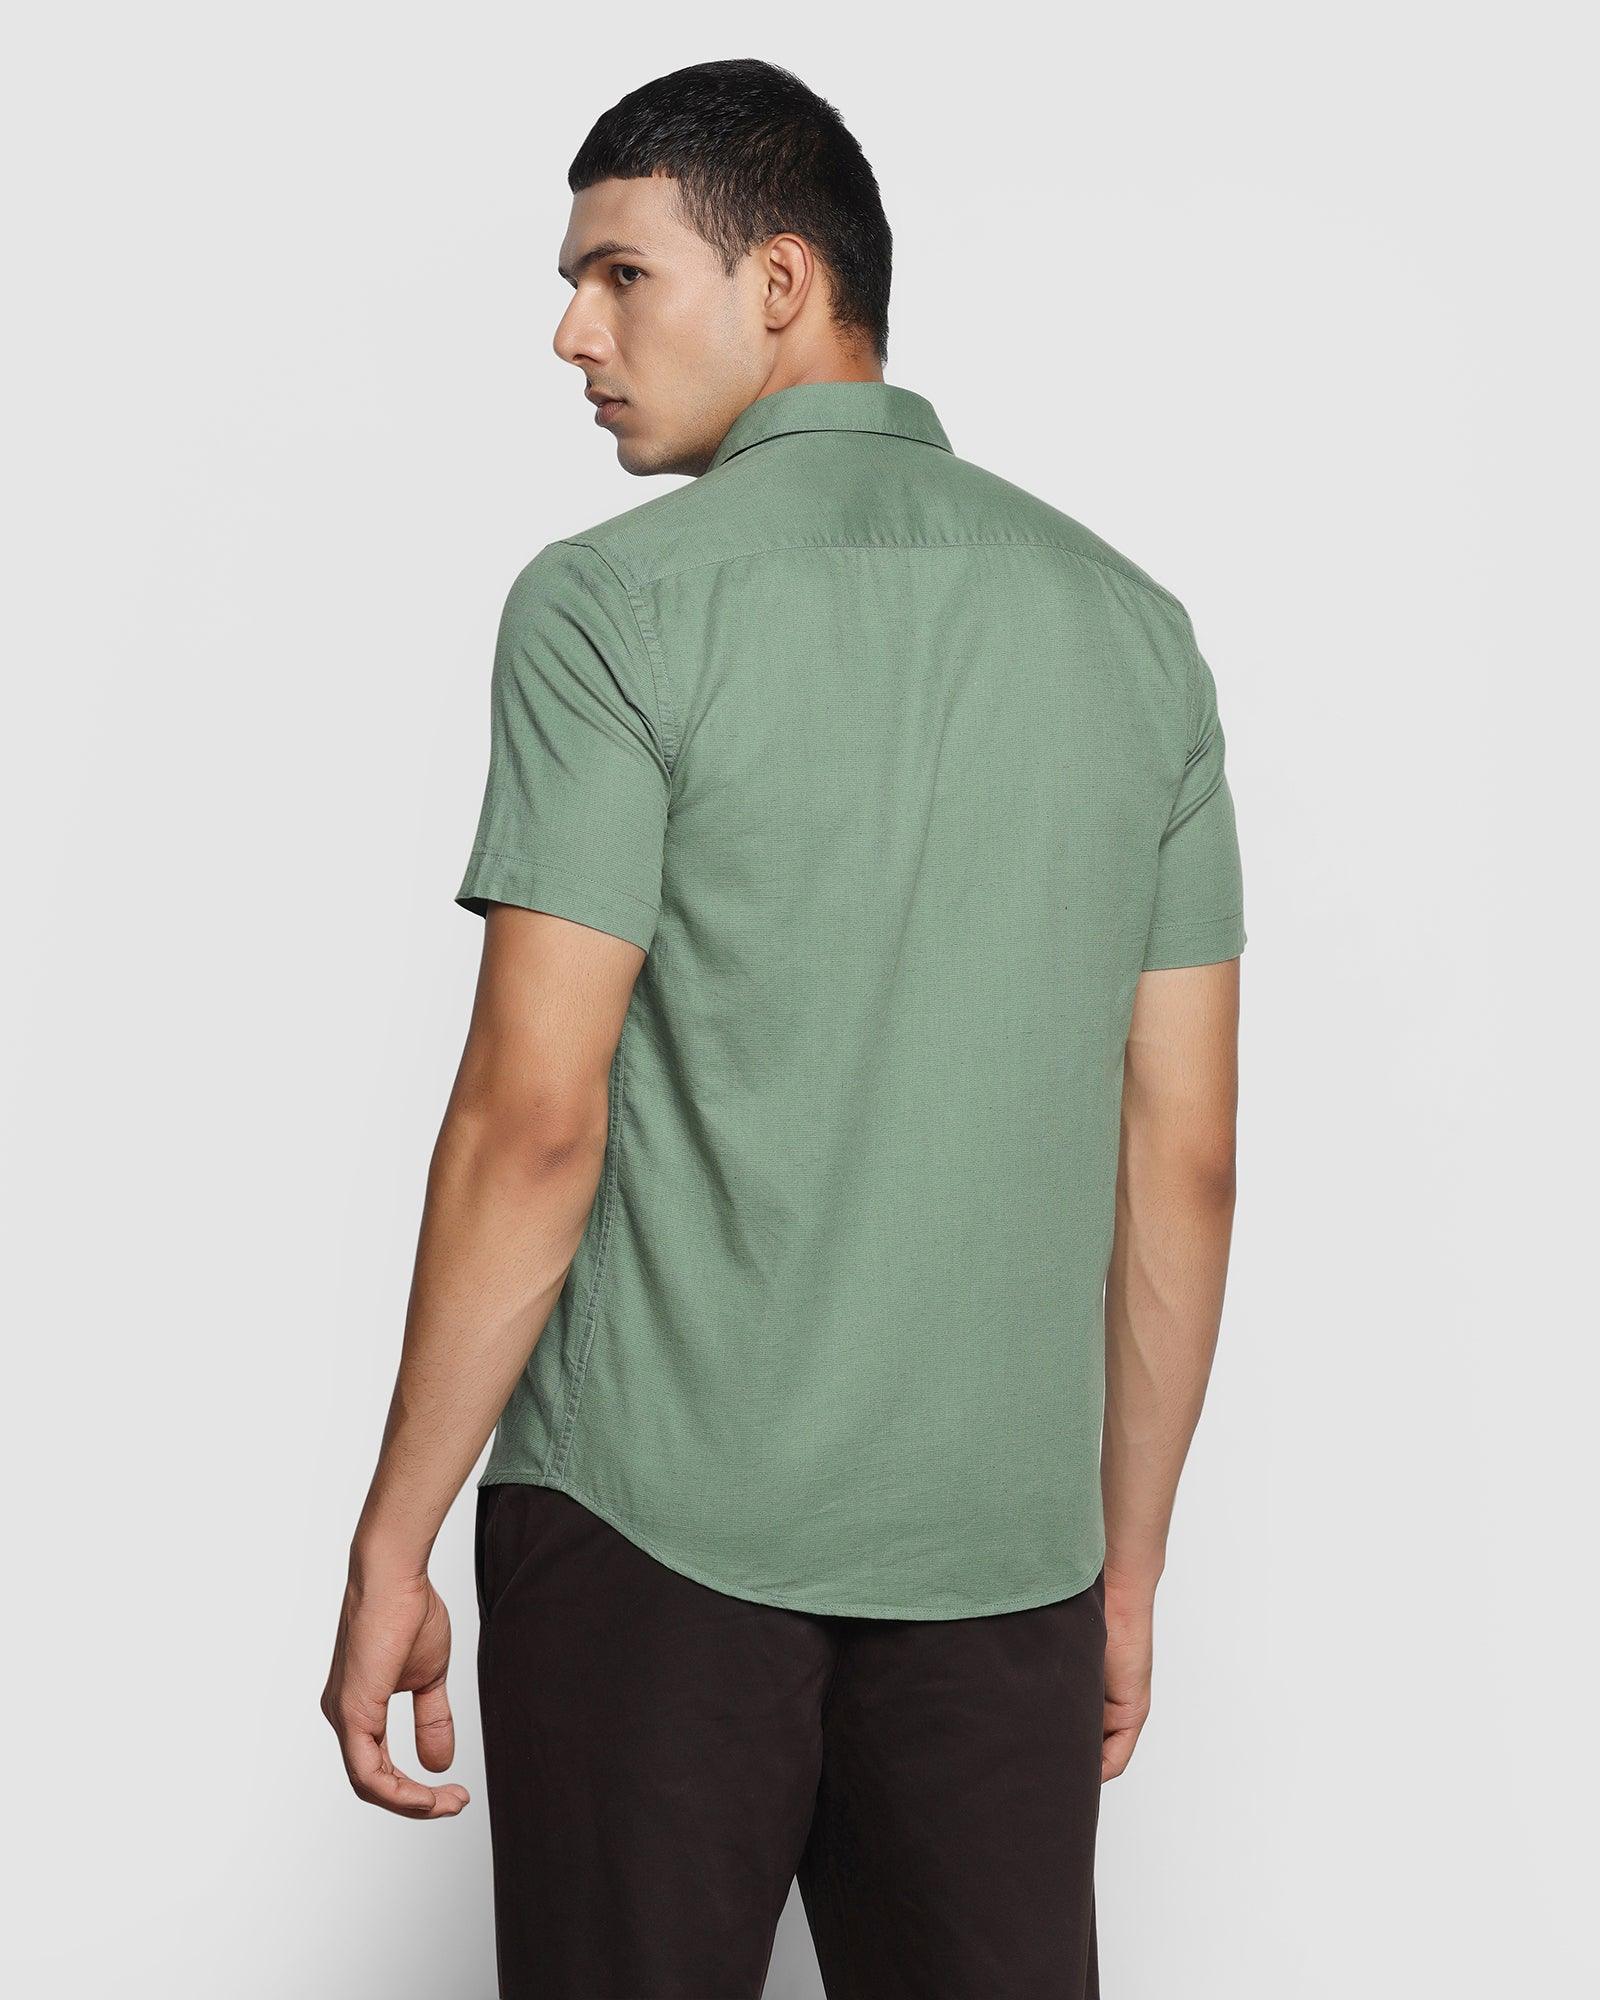 Linen Formal Half Sleeve Olive Solid Shirt - Lang